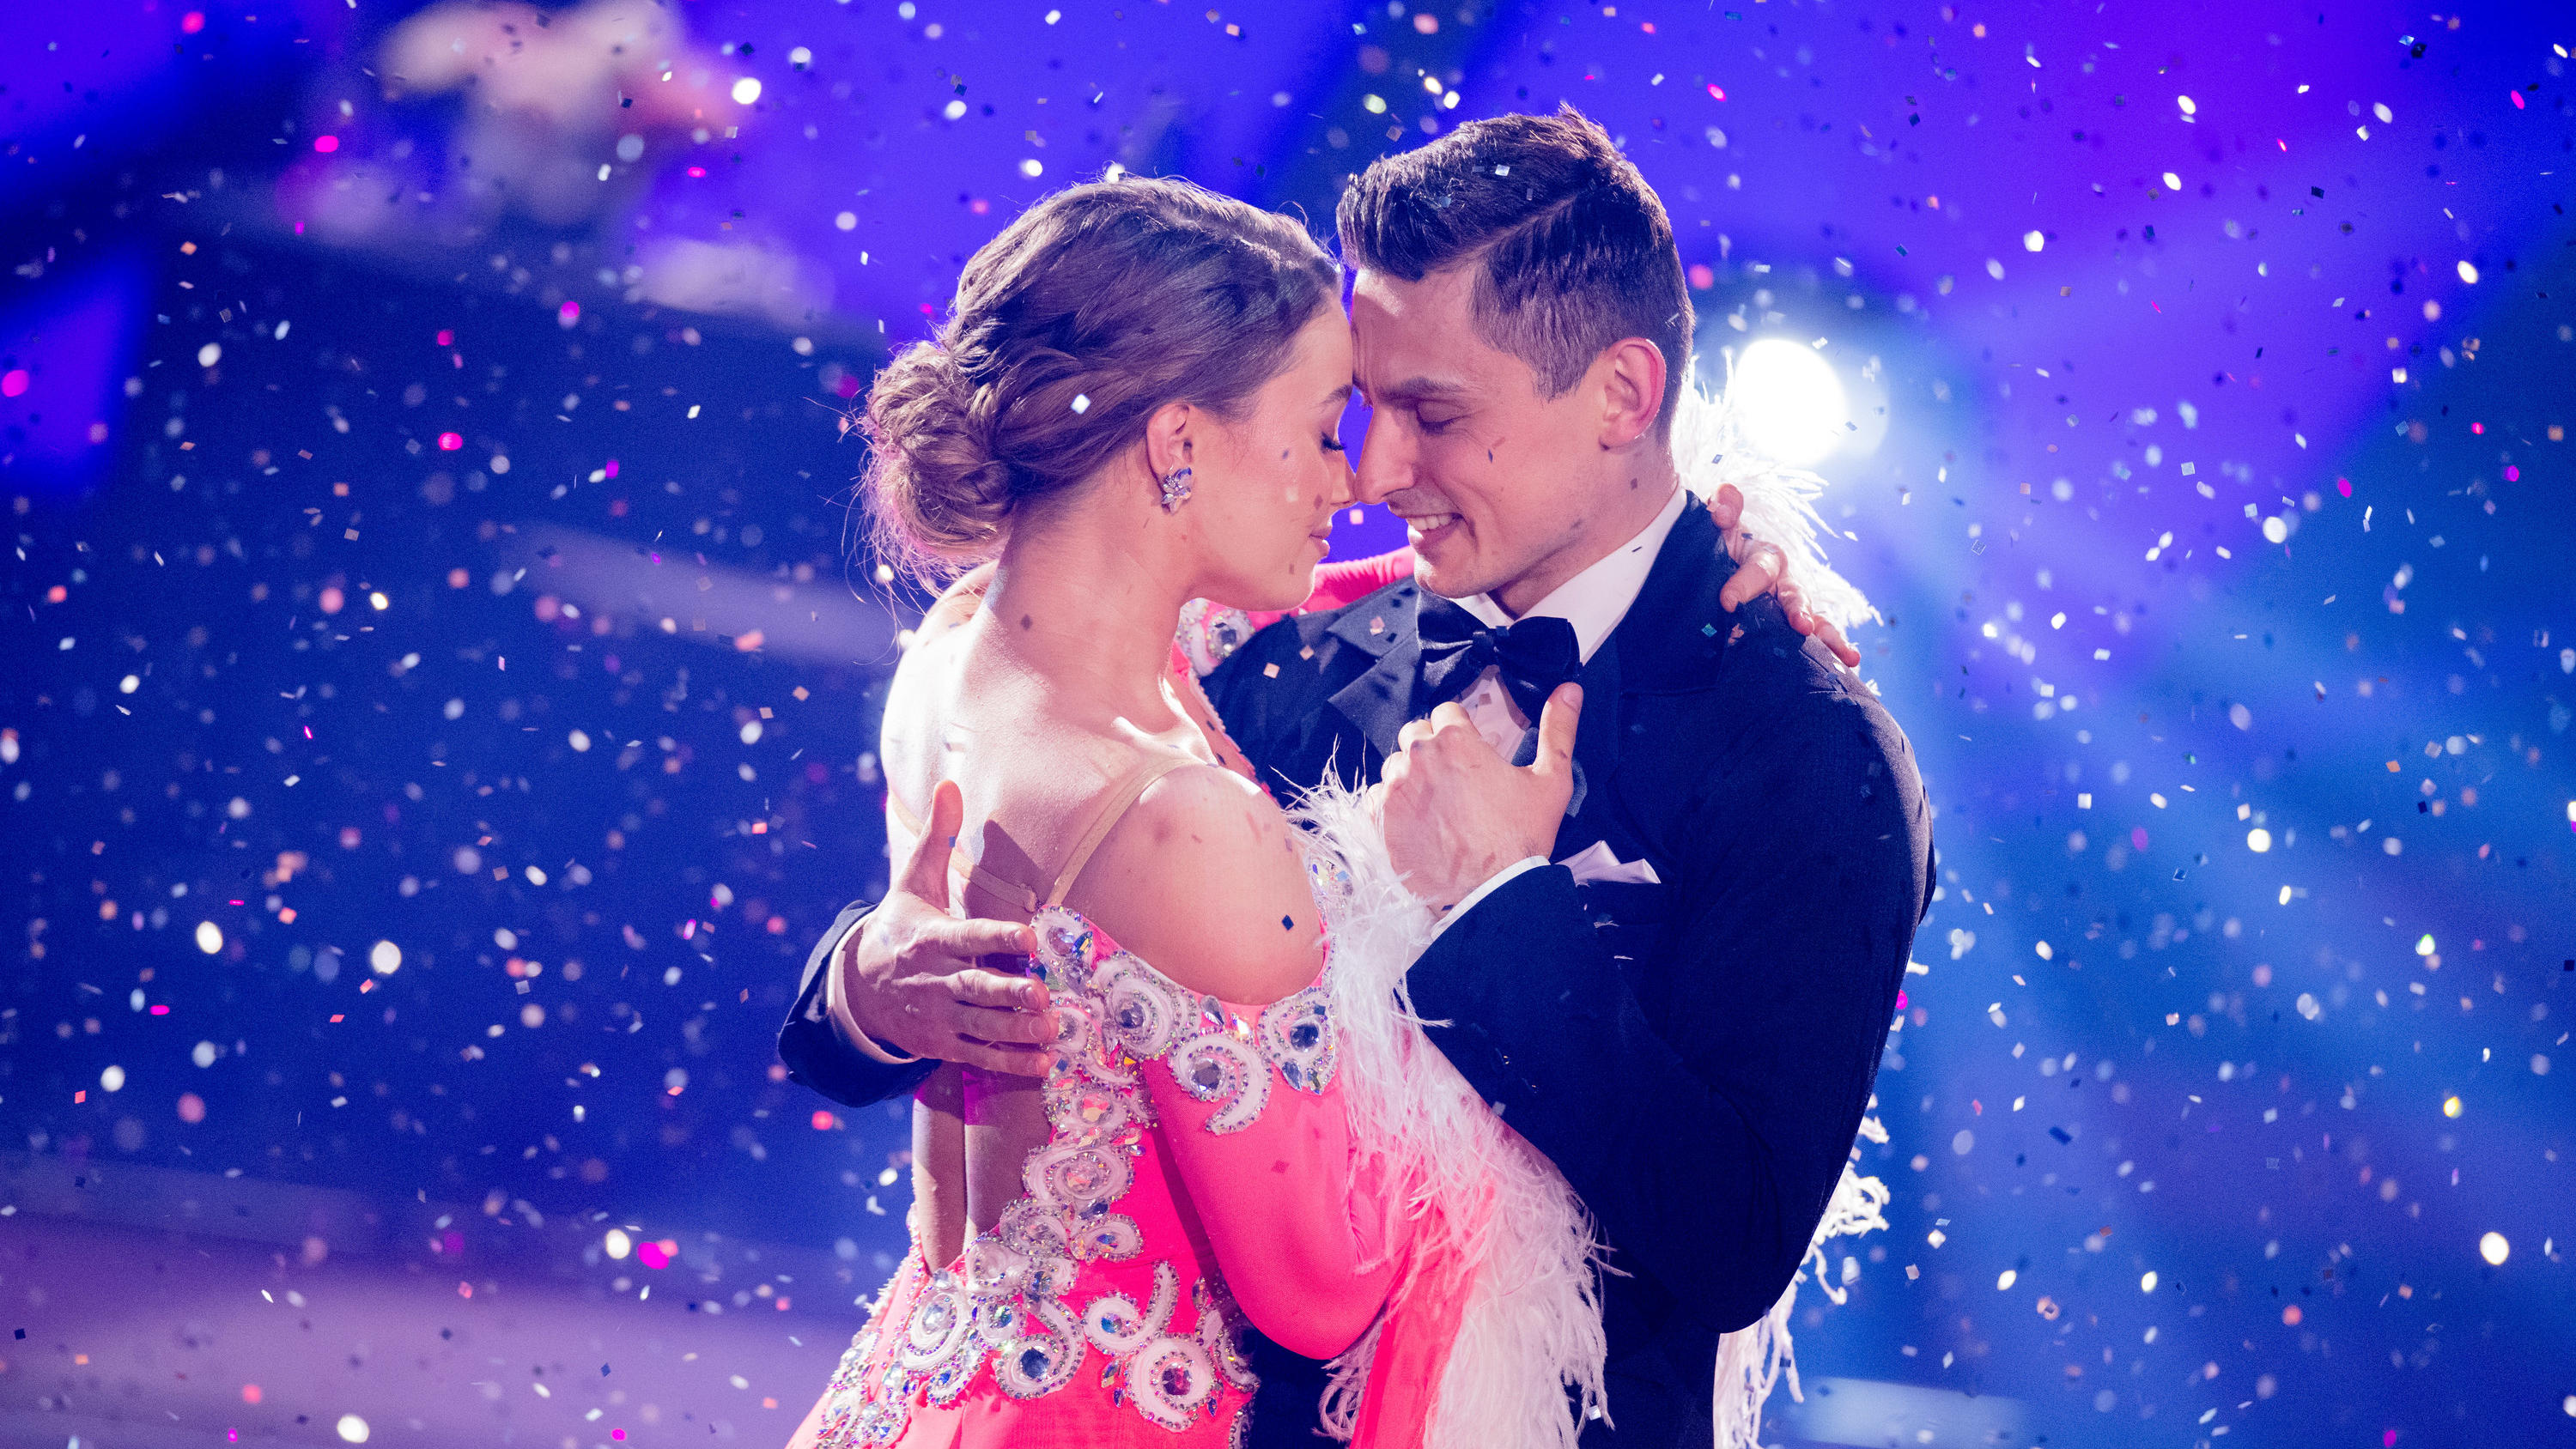 Im Finale wird es nochmal magisch zwischen Julia Beautx und Zsolt Sándor Cseke. Sie tanzen zum Thema "Frozen"!